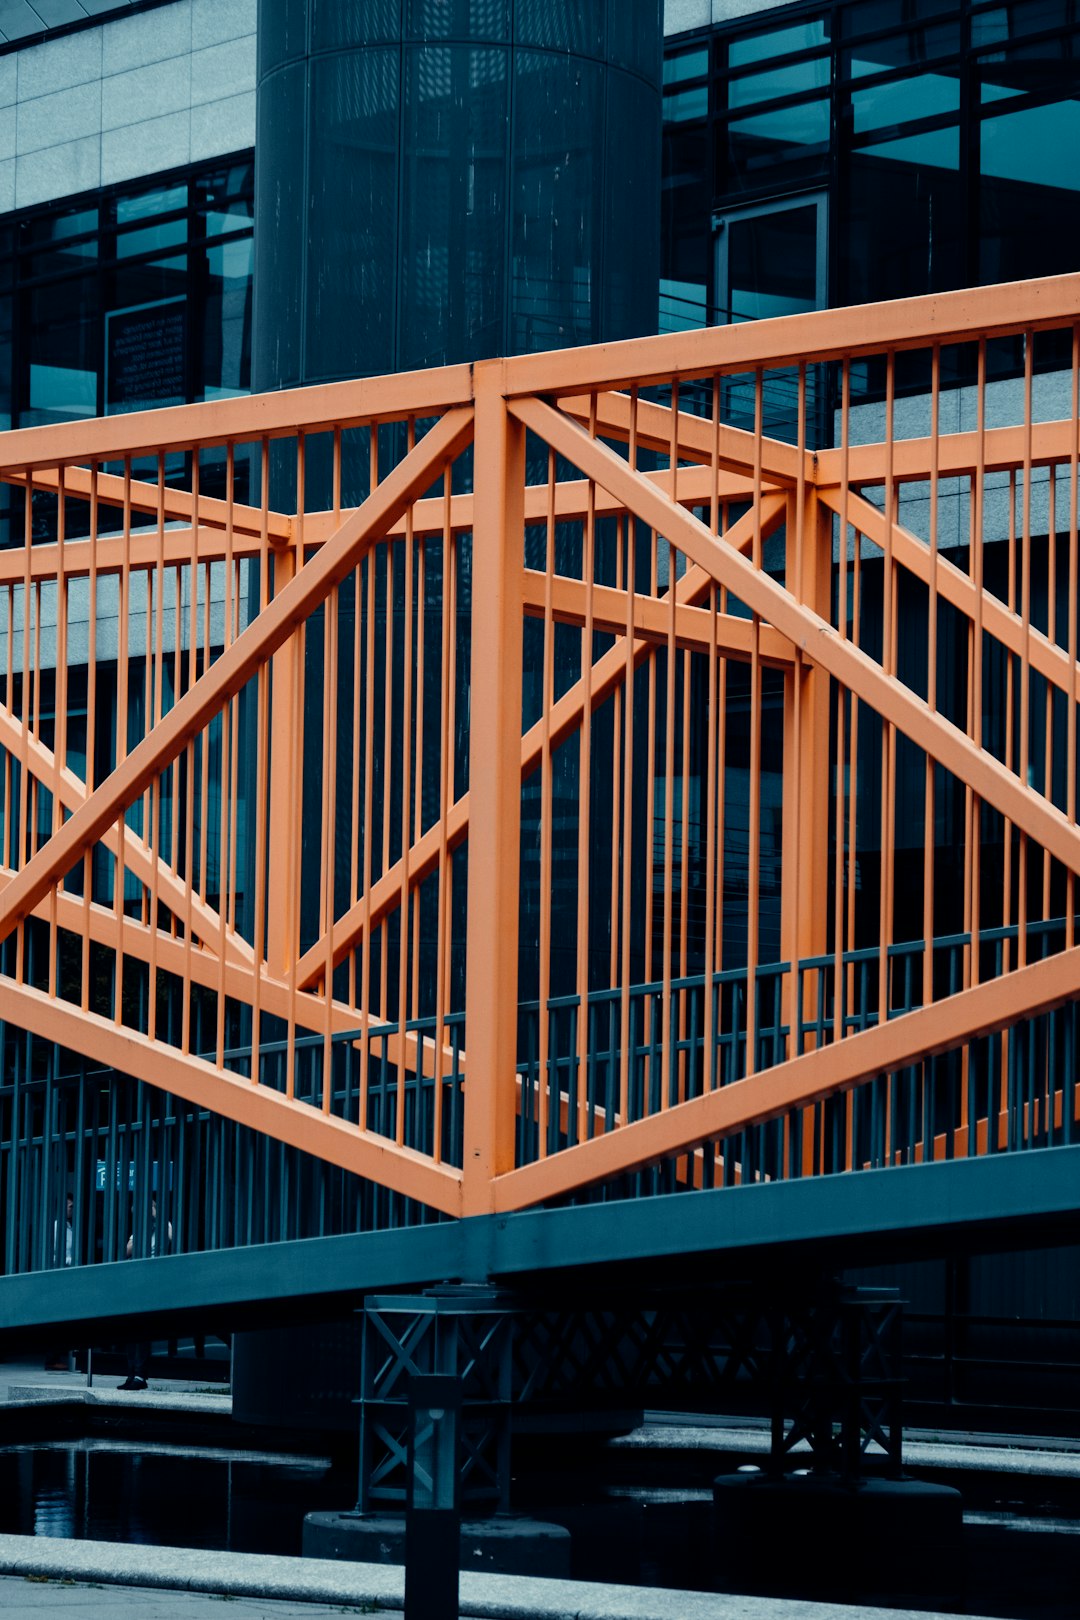 orange metal railings near building during daytime